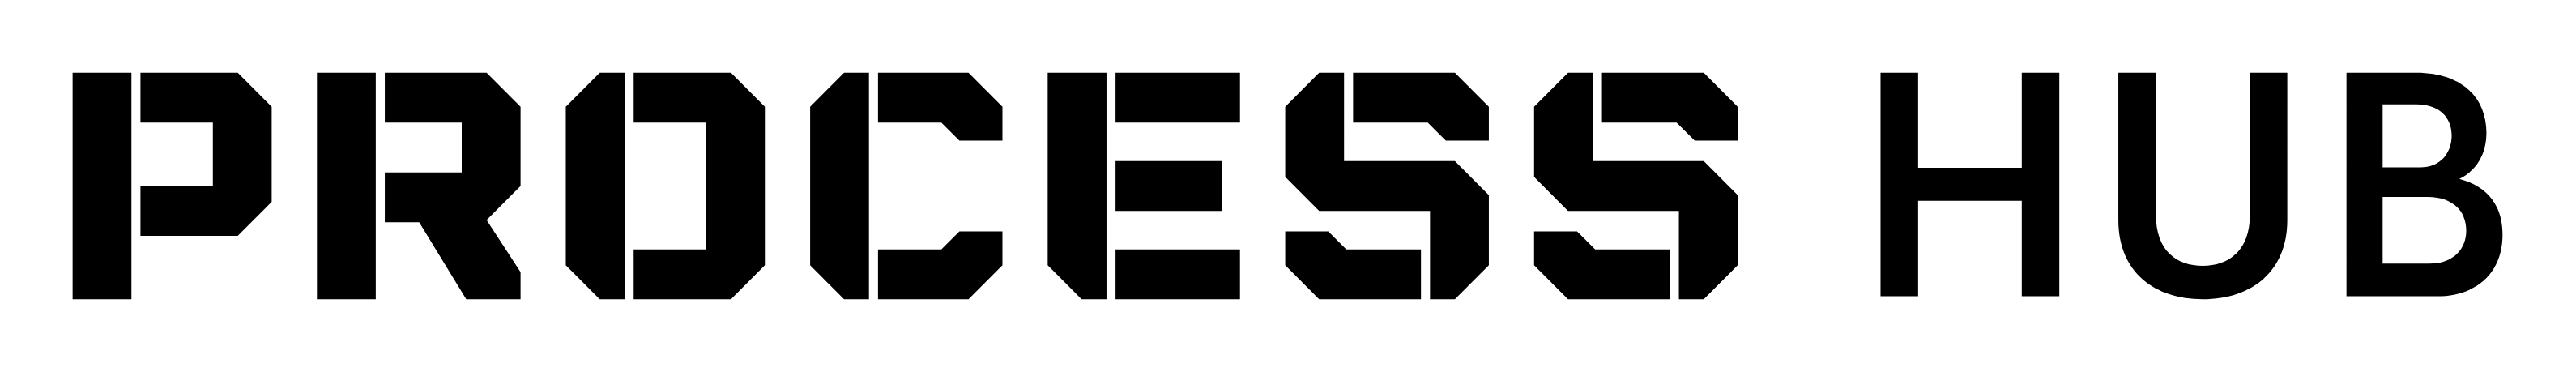 Logo PROCESS HUB PROSTA SPÓŁKA AKCYJNA